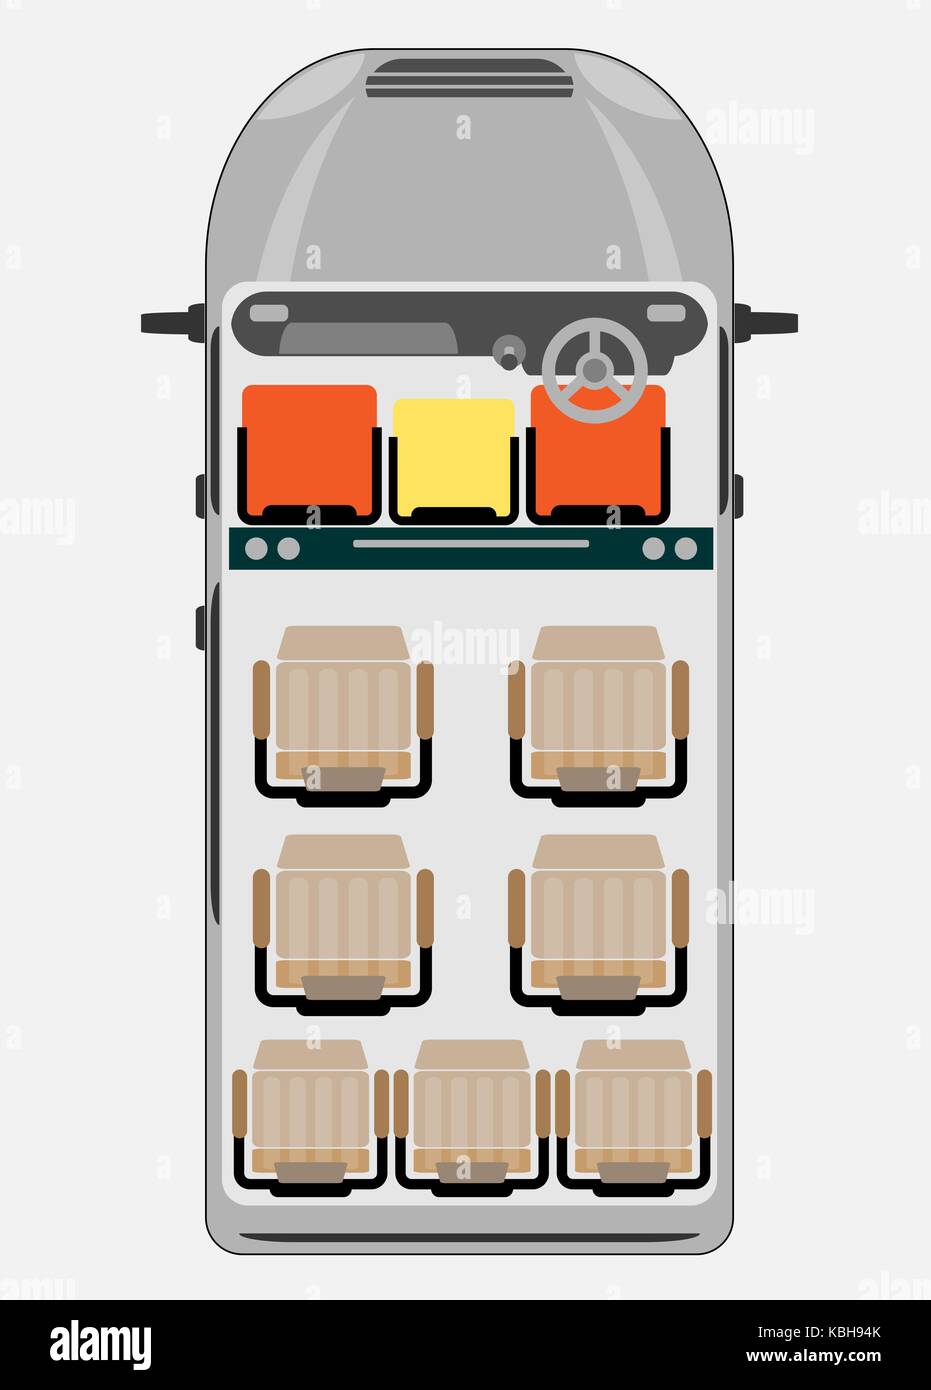 Top View Seat Map of Passenger Van Stock Vector Image & Art Alamy